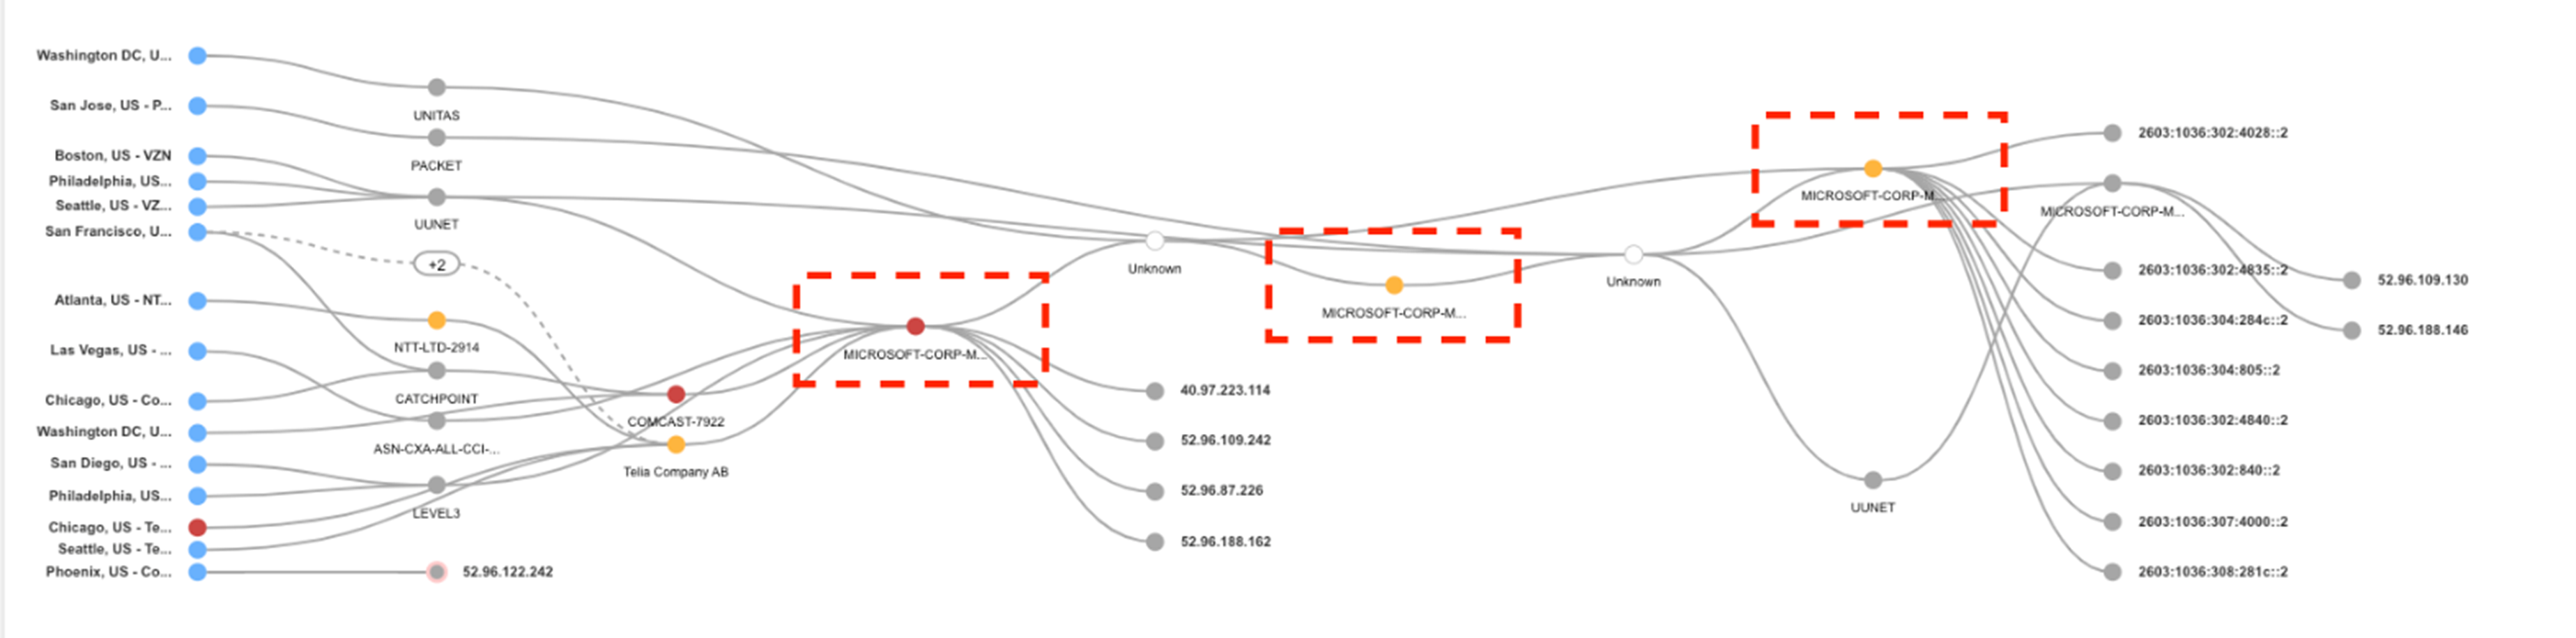 図2：Catchpoint スマートボードのホップごとの可視化による、全米のマイクロソフト管理ホップでのパケットロスの様子（Catchpoint）